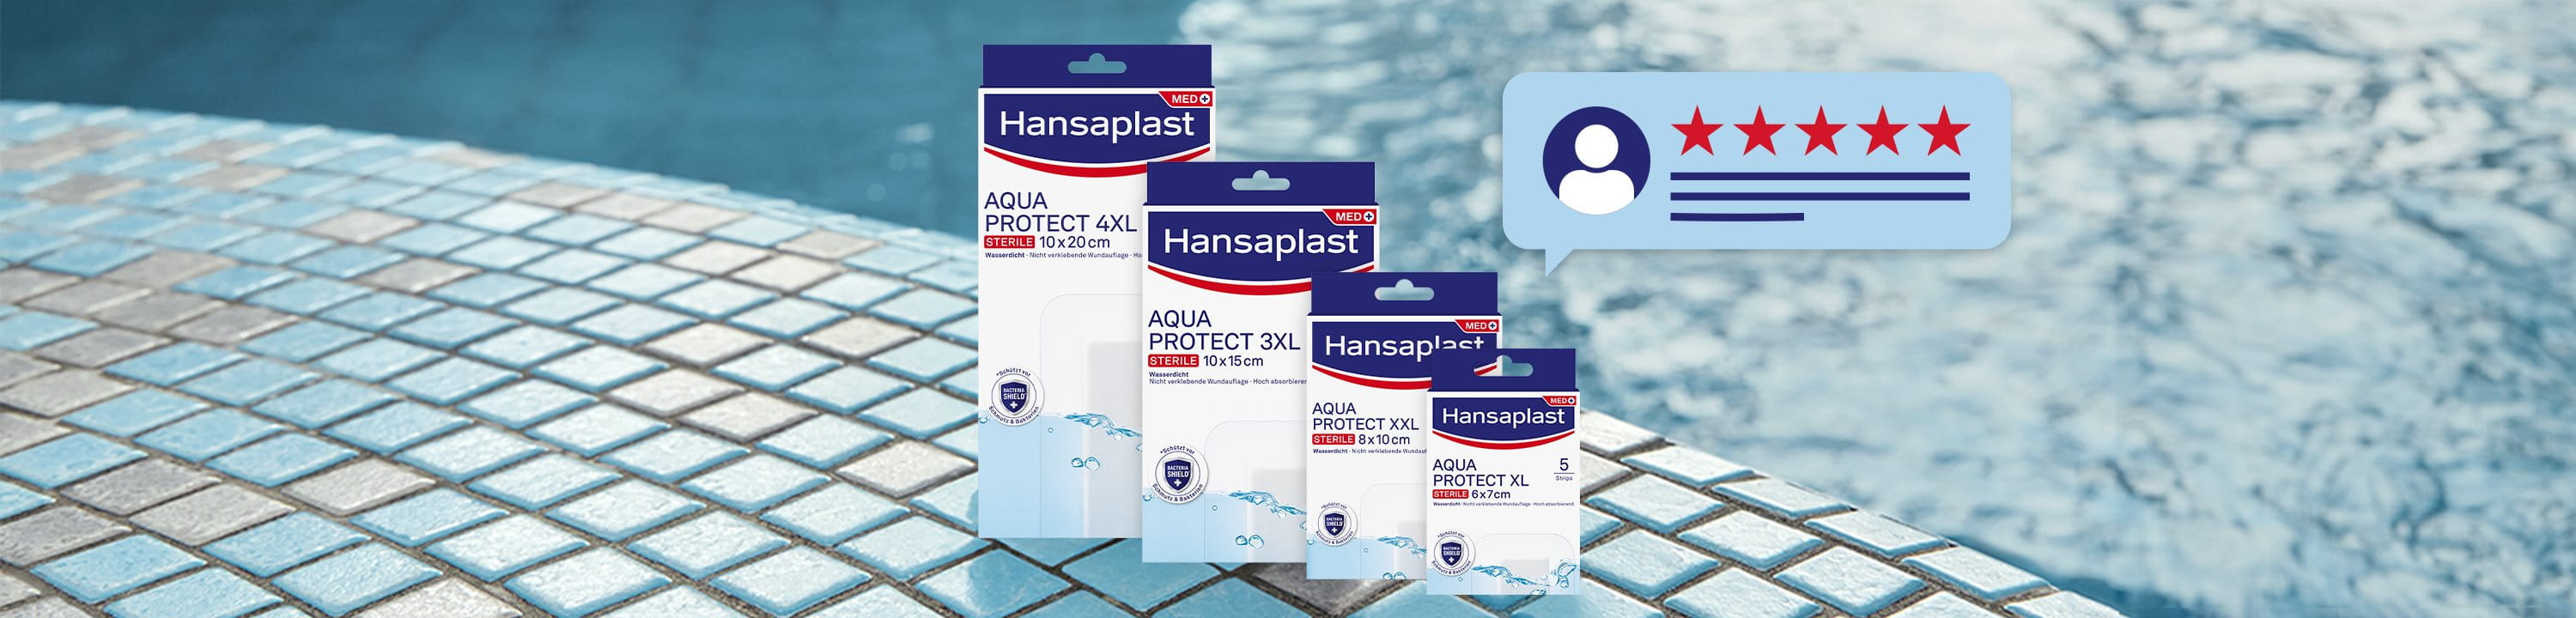 Hansaplast Aqua Protect 